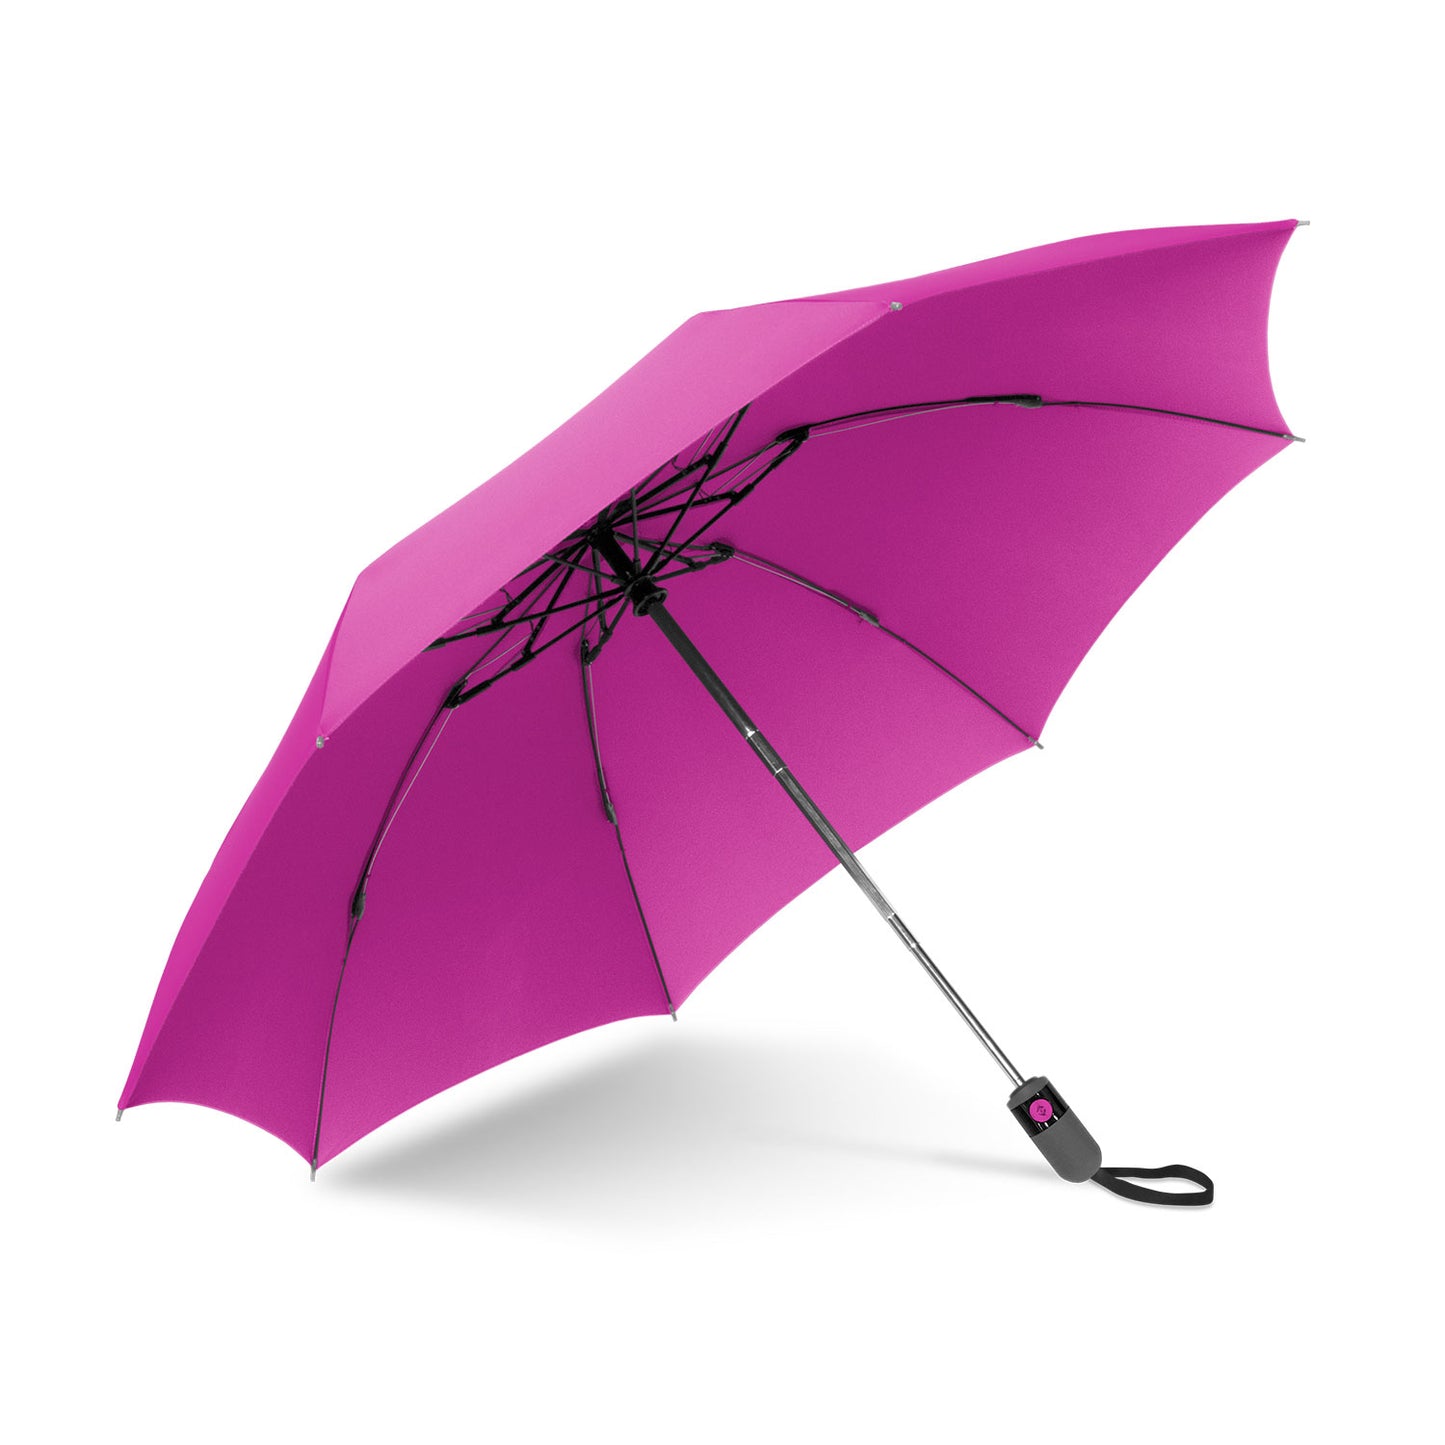 UnbelievaBrella Umbrella